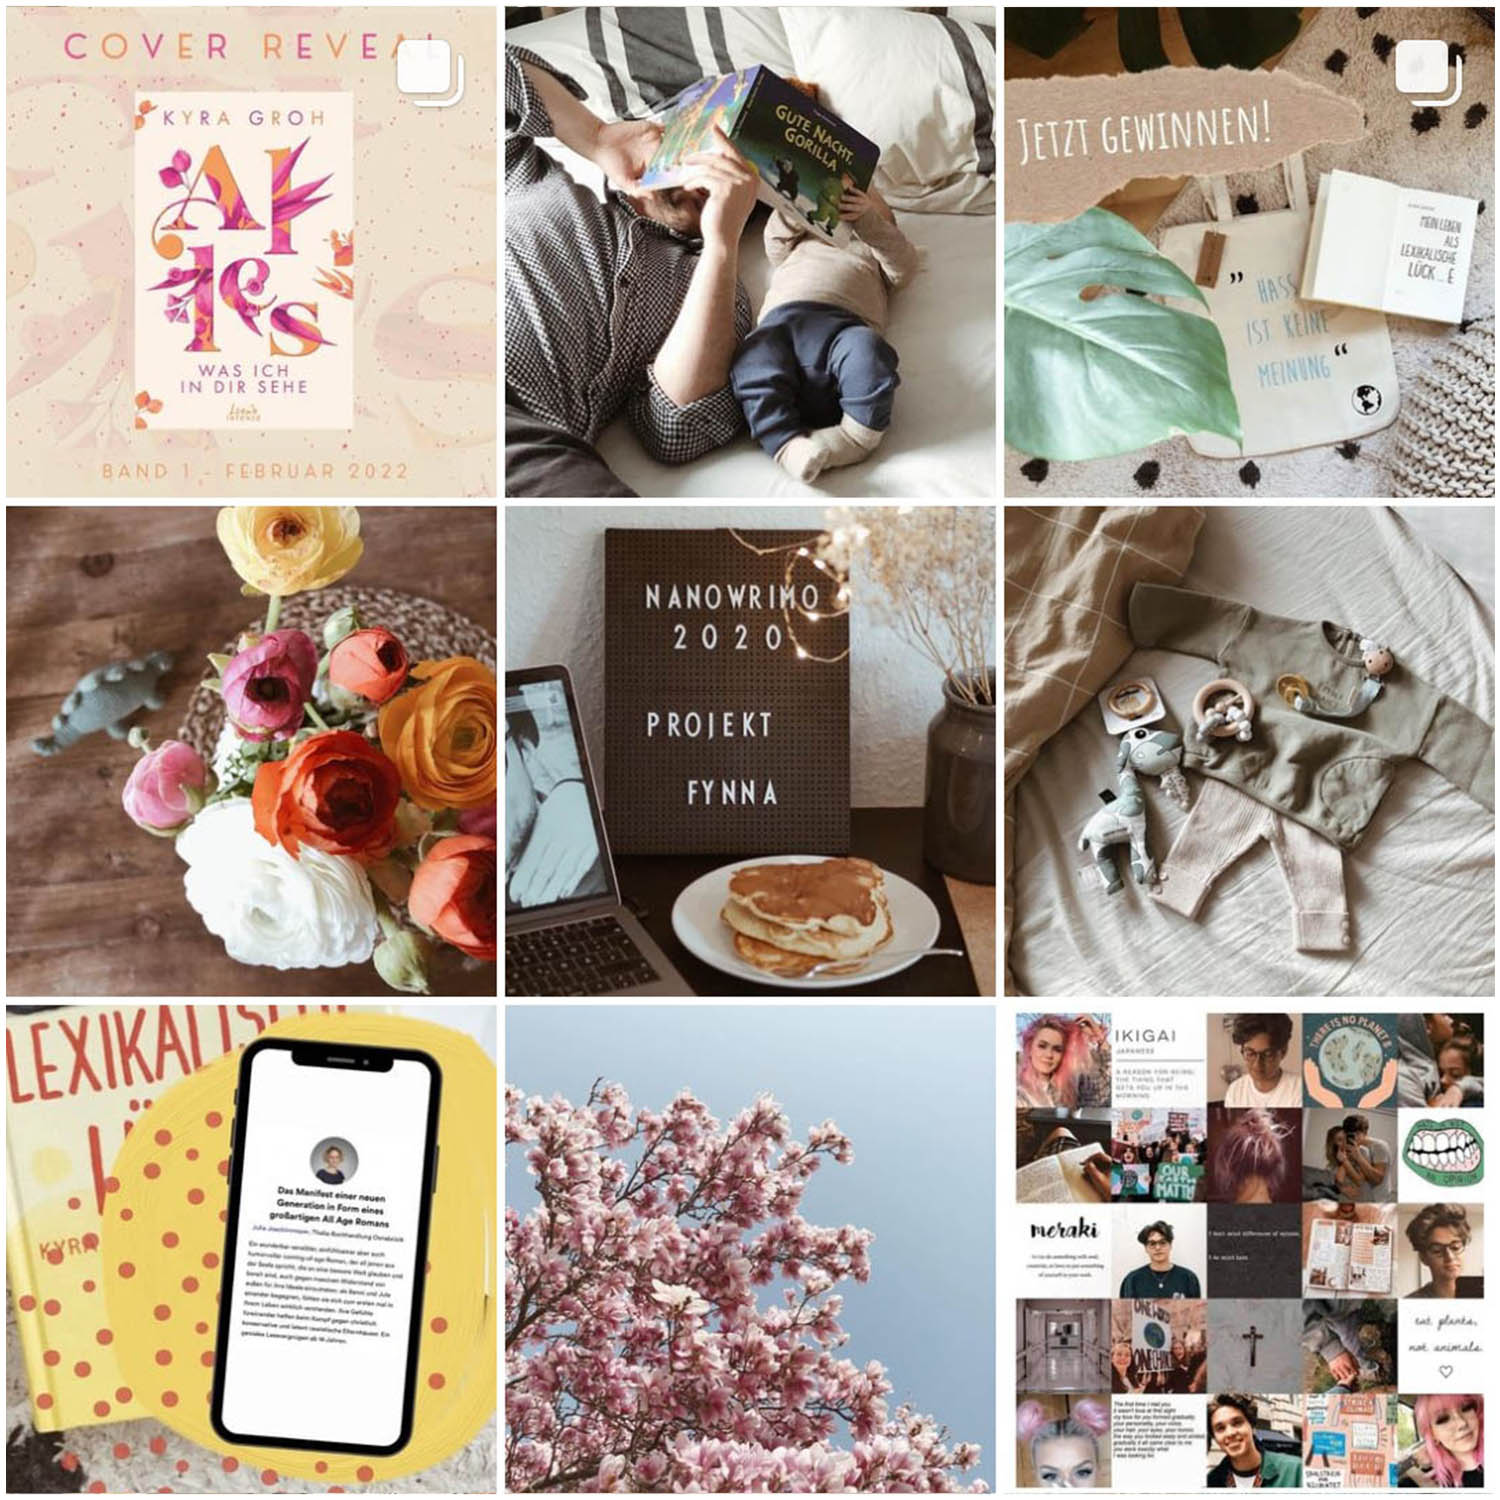 Auf ihrem Instagram-Profil teilt New Adult Autorin Kyra Groh noch mehr Informationen zu ihren Liebesgeschichten und mit ihren Followern.